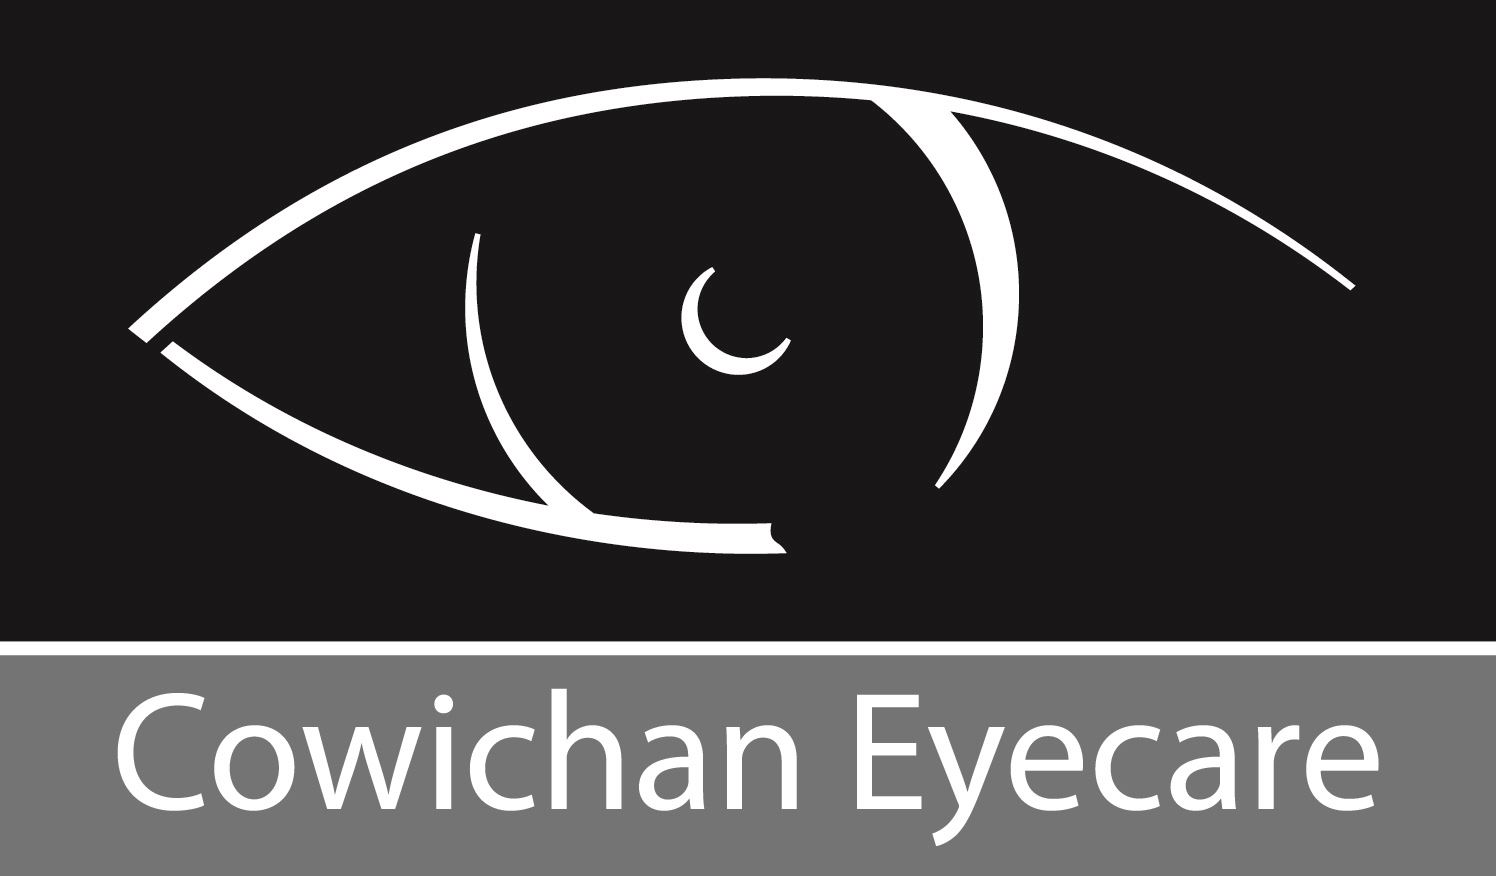 Cowichan Eyecare